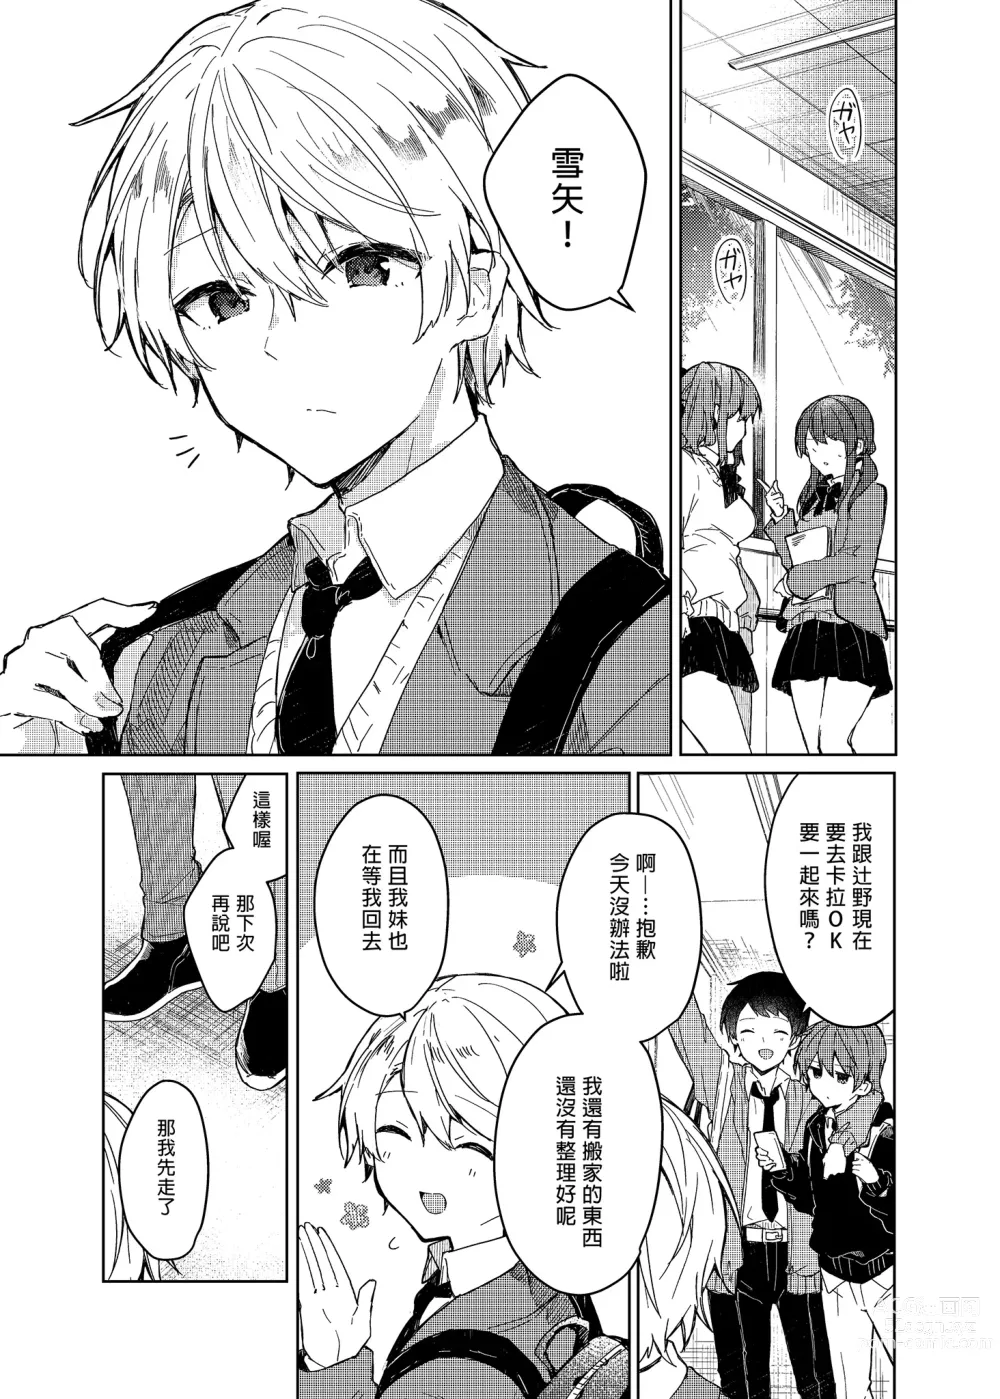 Page 5 of doujinshi 今天開始當個壞孩子。 (decensored)